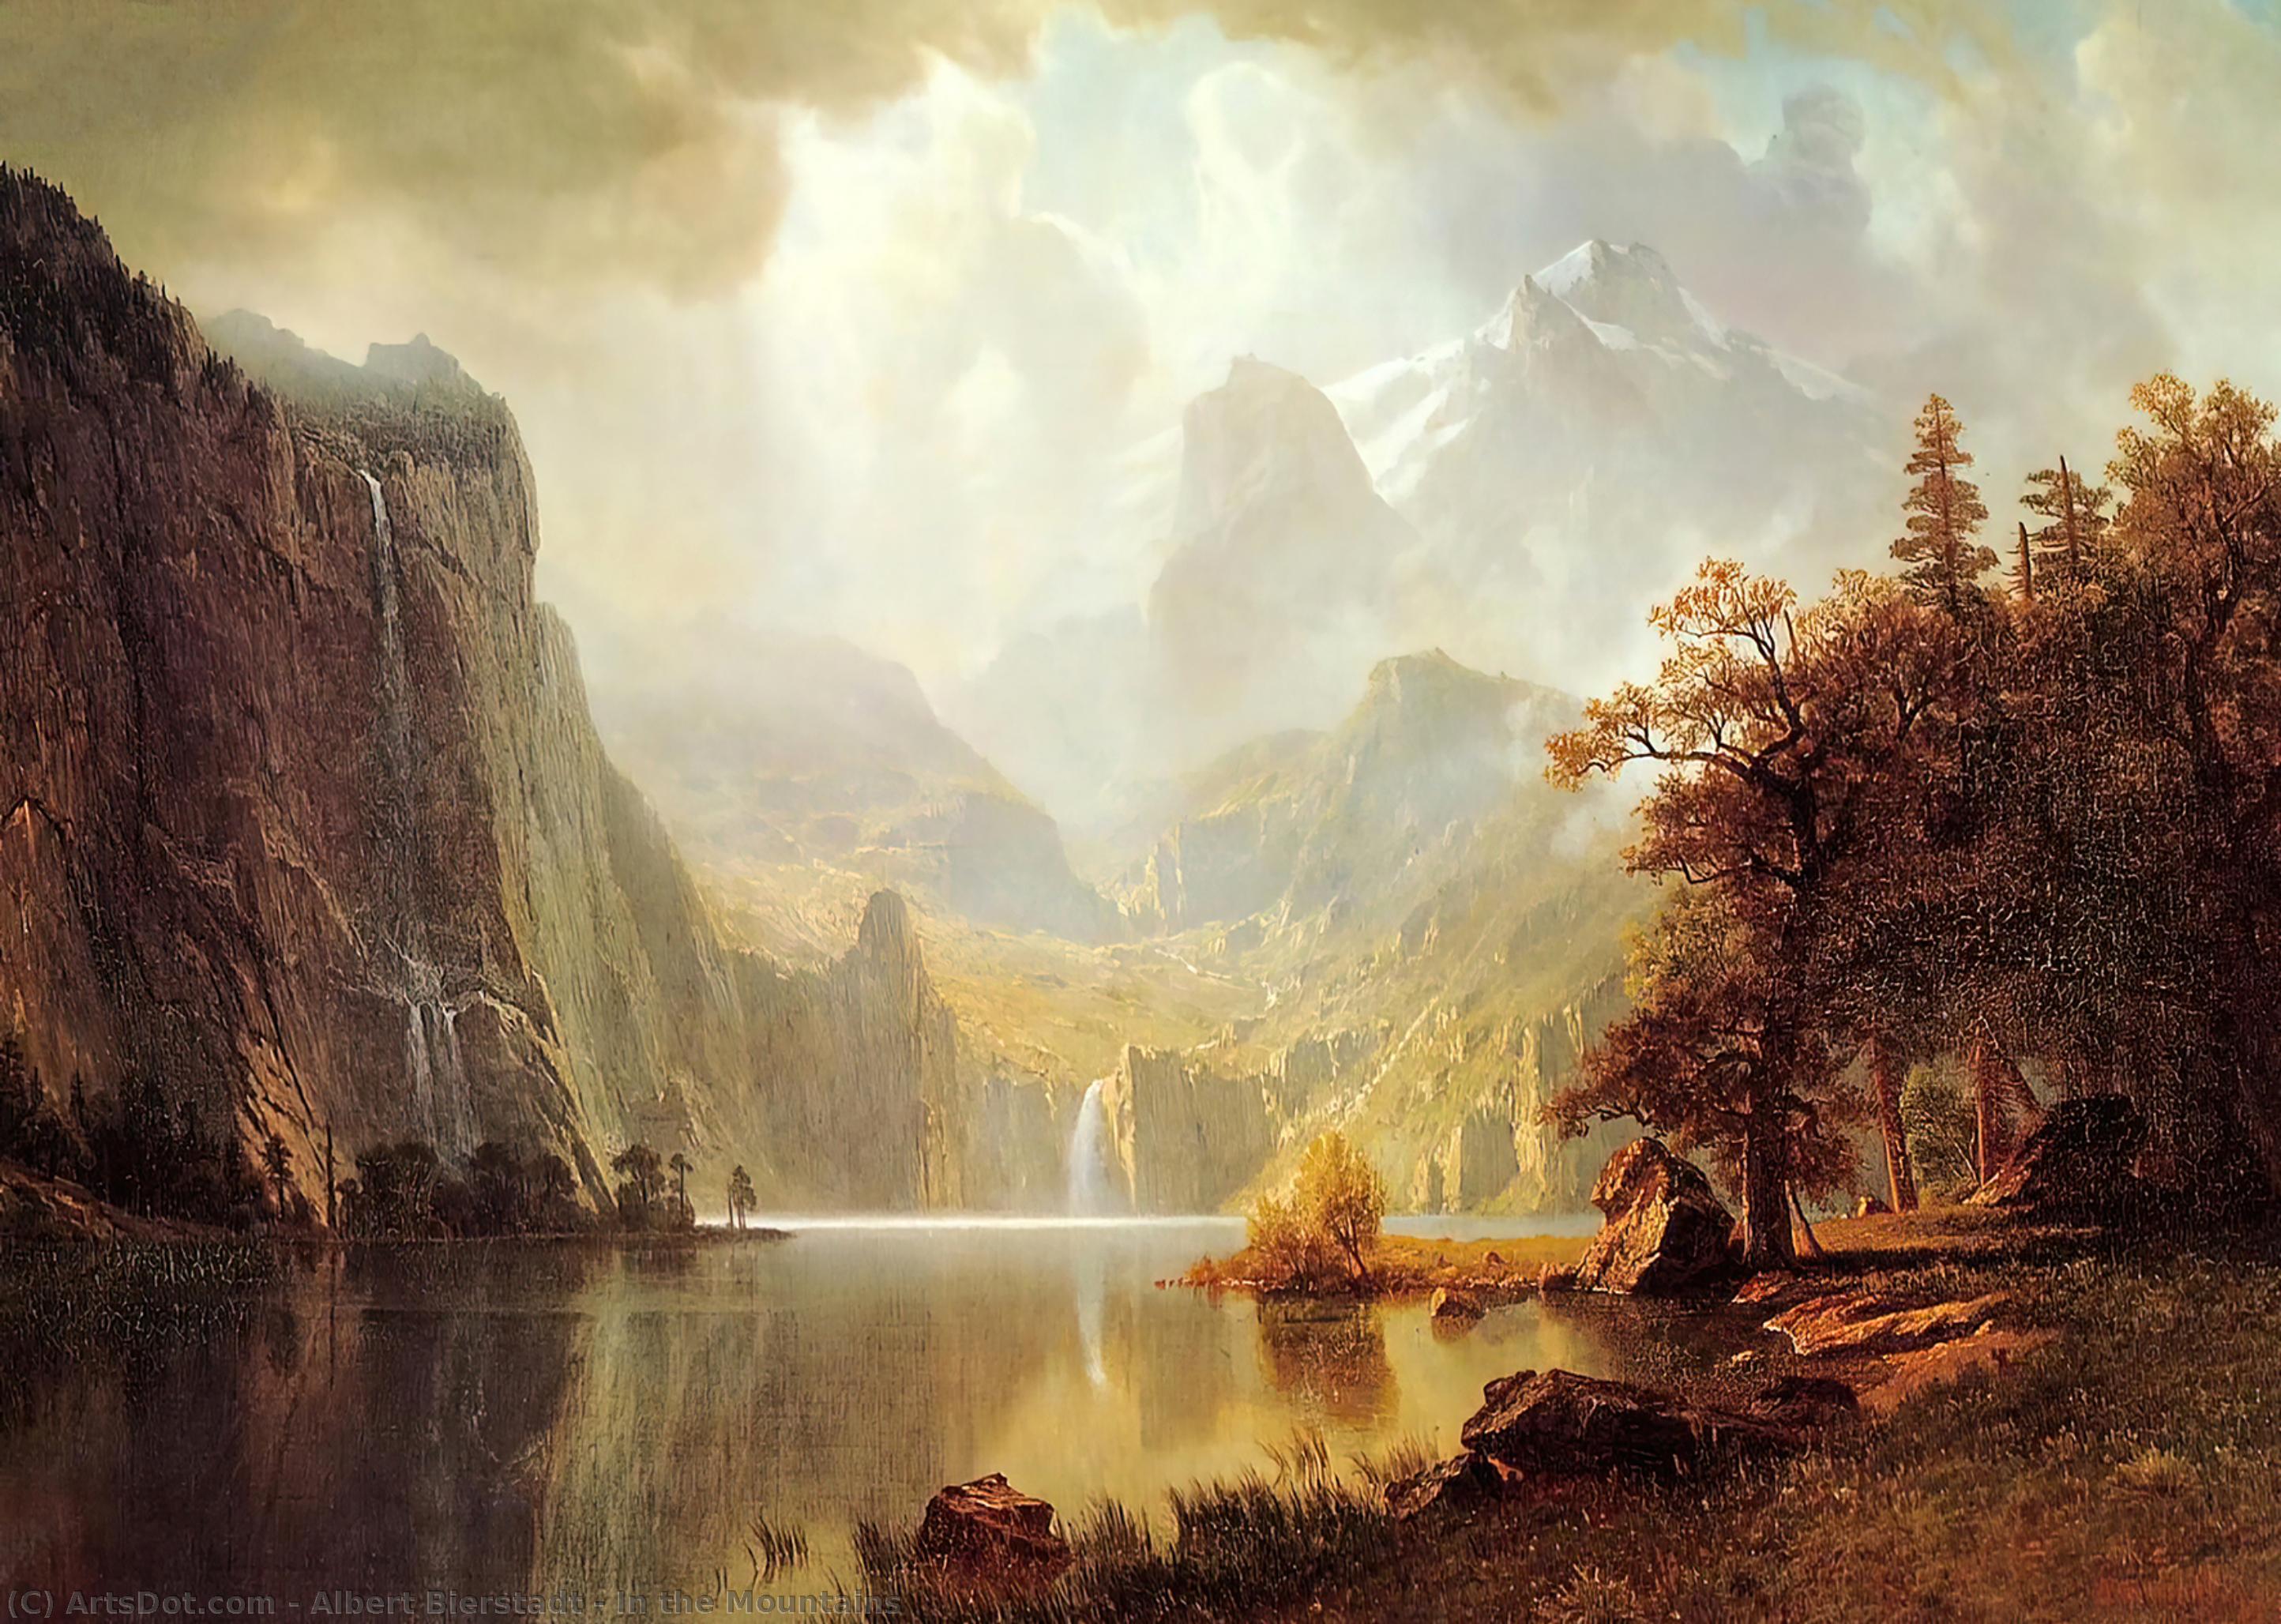 Художественные пейзажи. Альберт Бирштадт. Альберт Бирштадт (Albert Bierstadt; 1830-1902). Альберт Бирштадт картины. Пейзаж Albert Bierstadt.